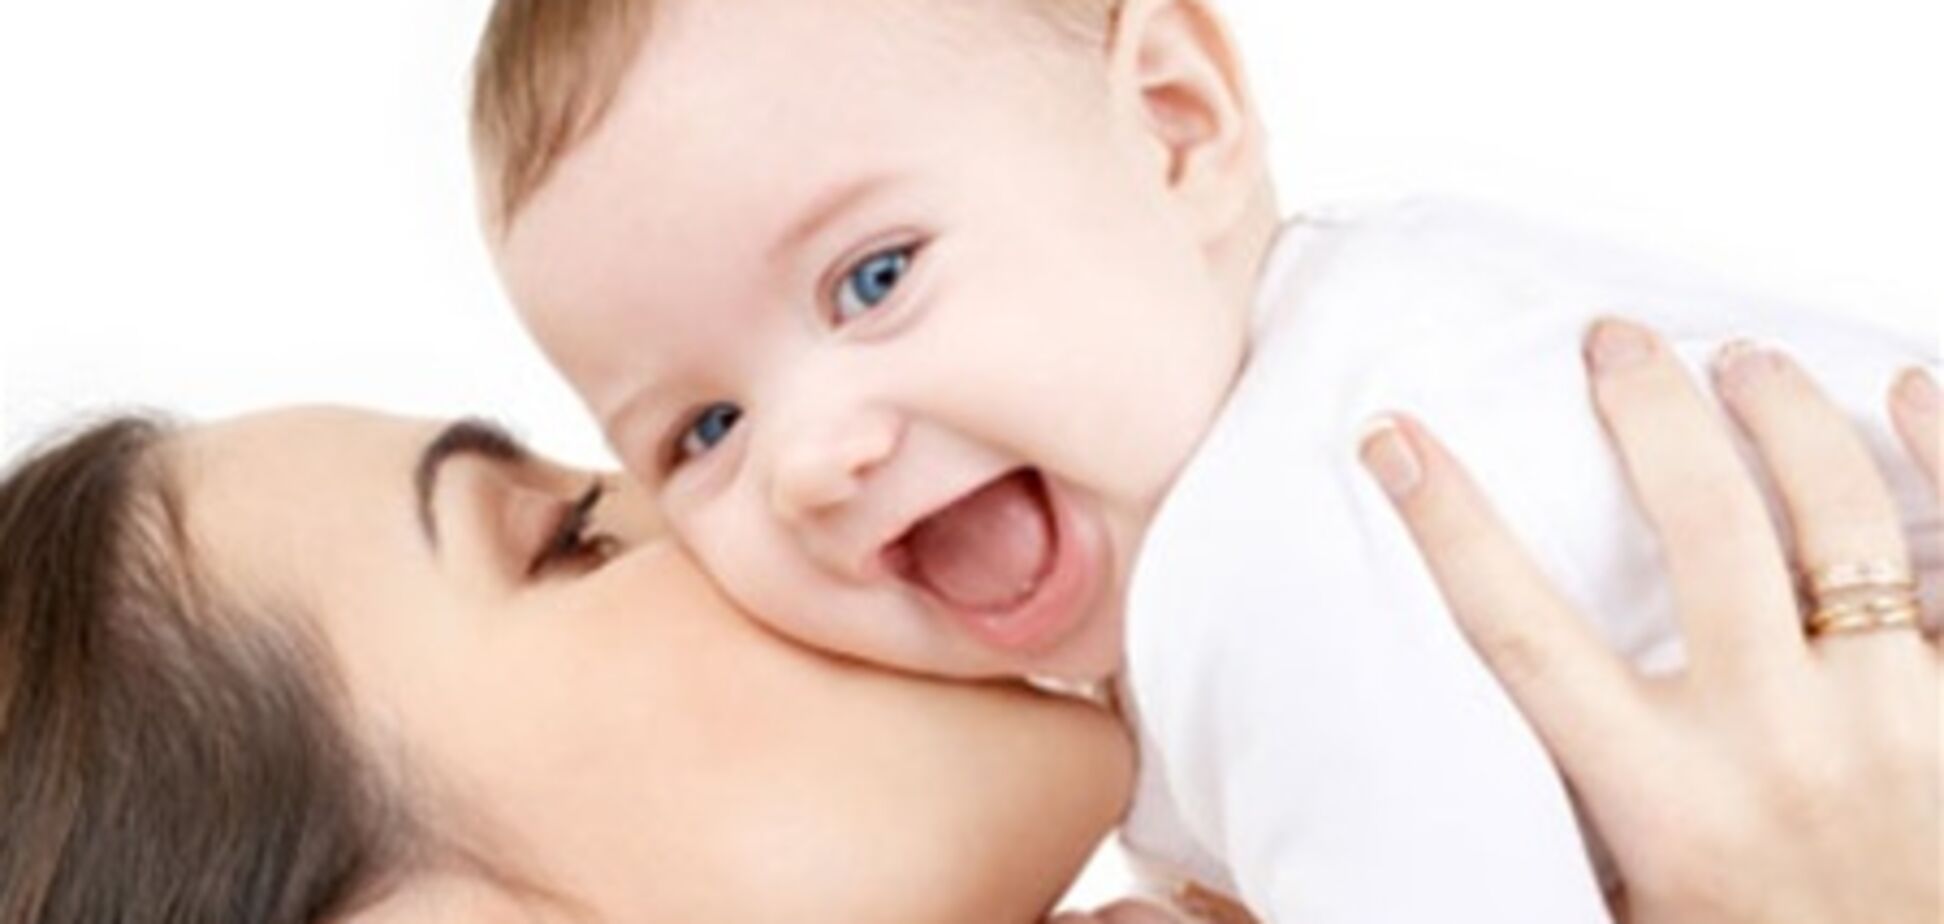 Україна співпрацює зі Швейцарією в галузі охорони здоров’я матері та дитини - експерт